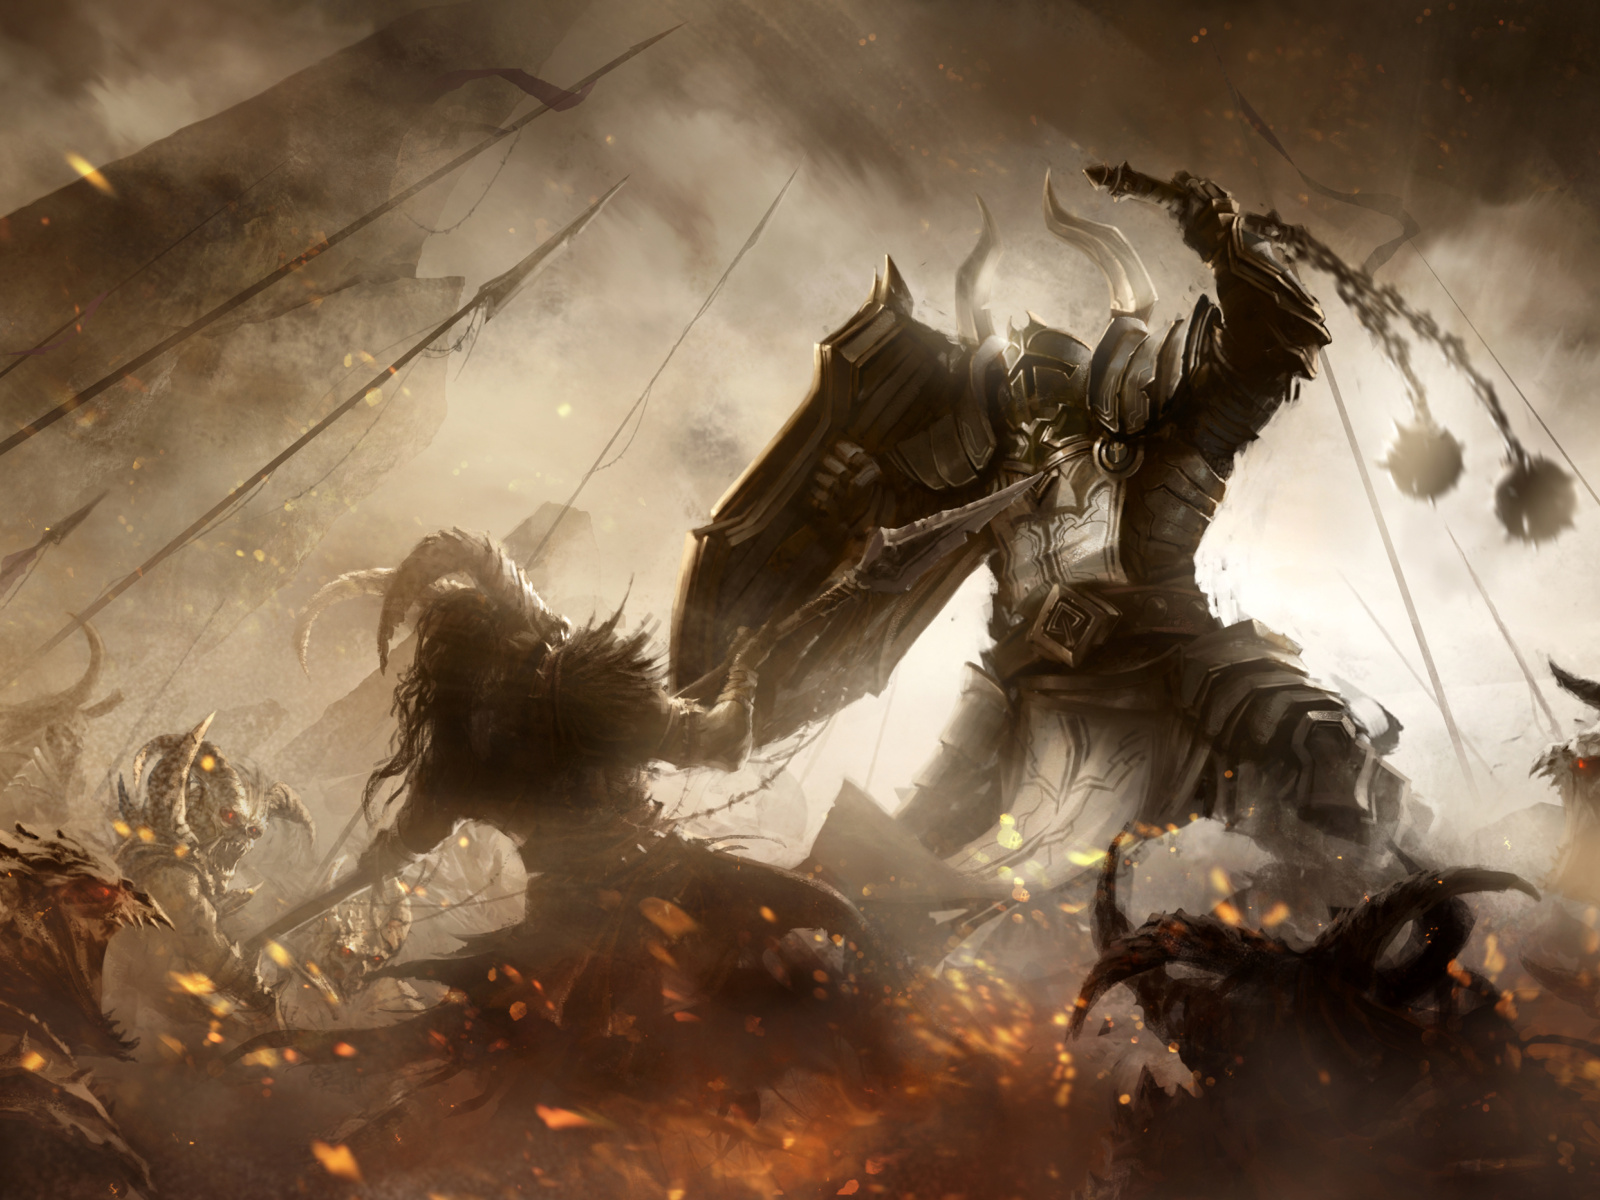 Das Diablo III battle of knights Wallpaper 1600x1200